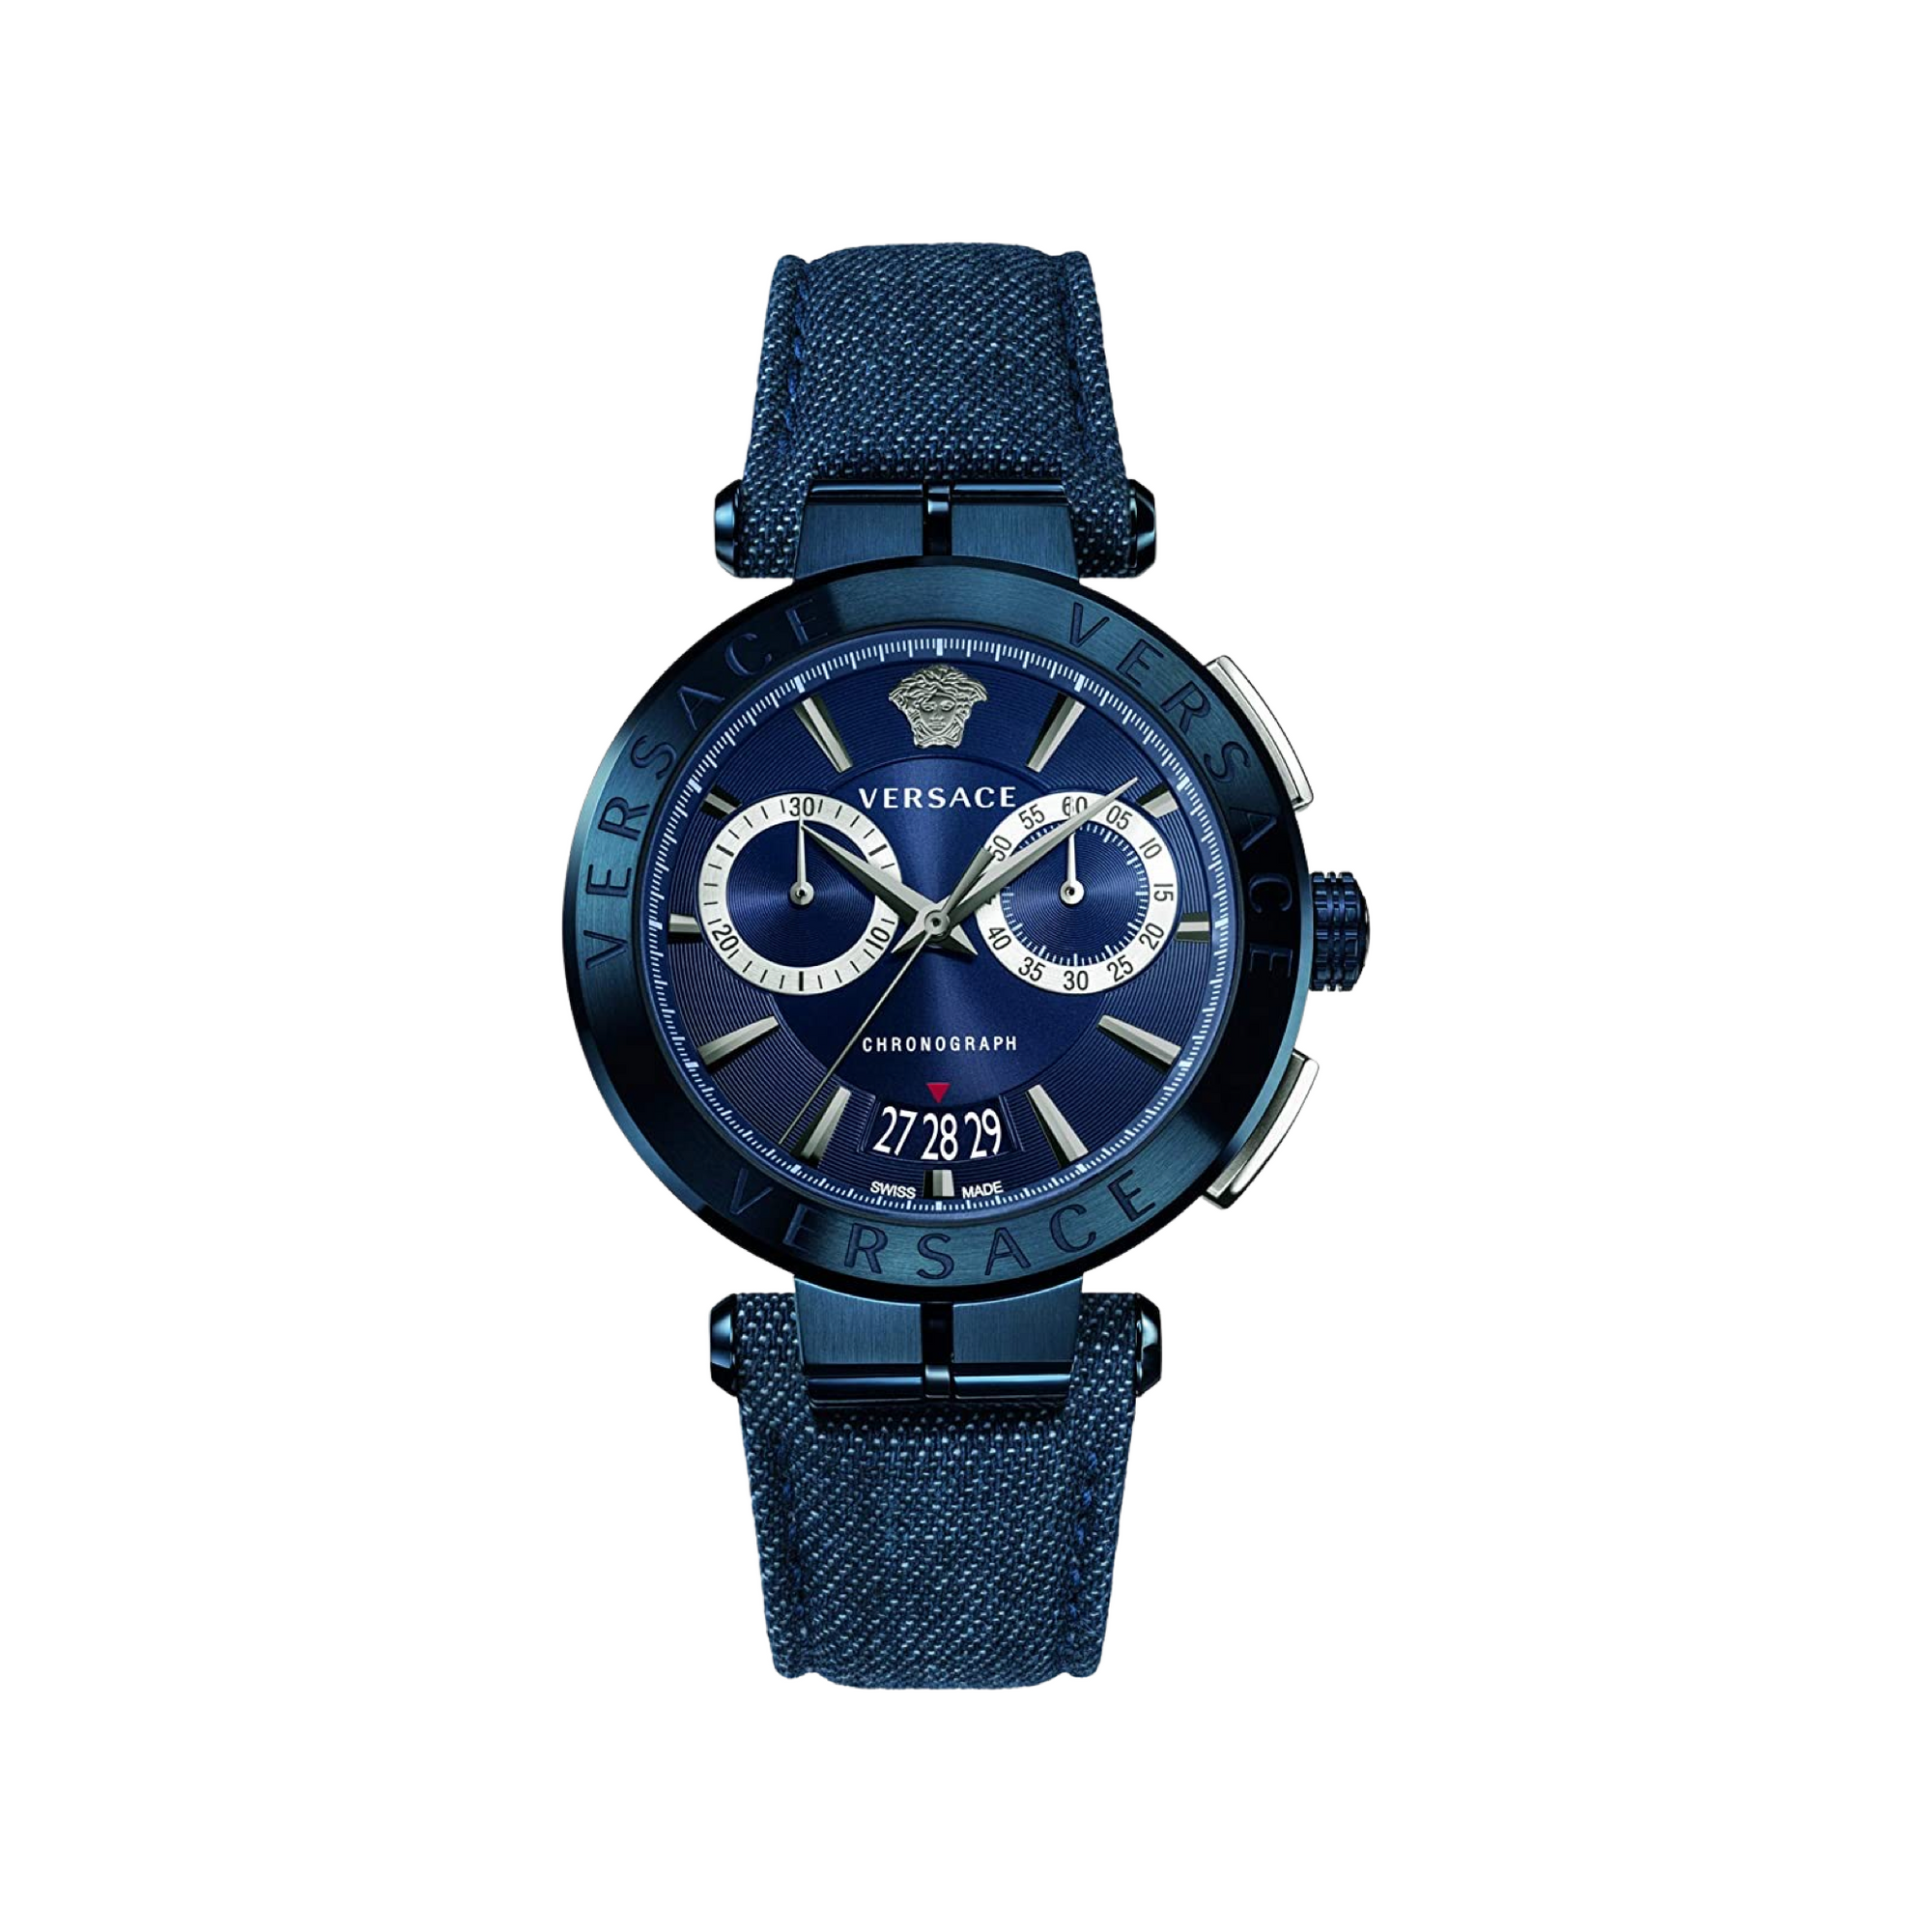 Versace Men's Chronograph Watch Aion Blue VBR070017